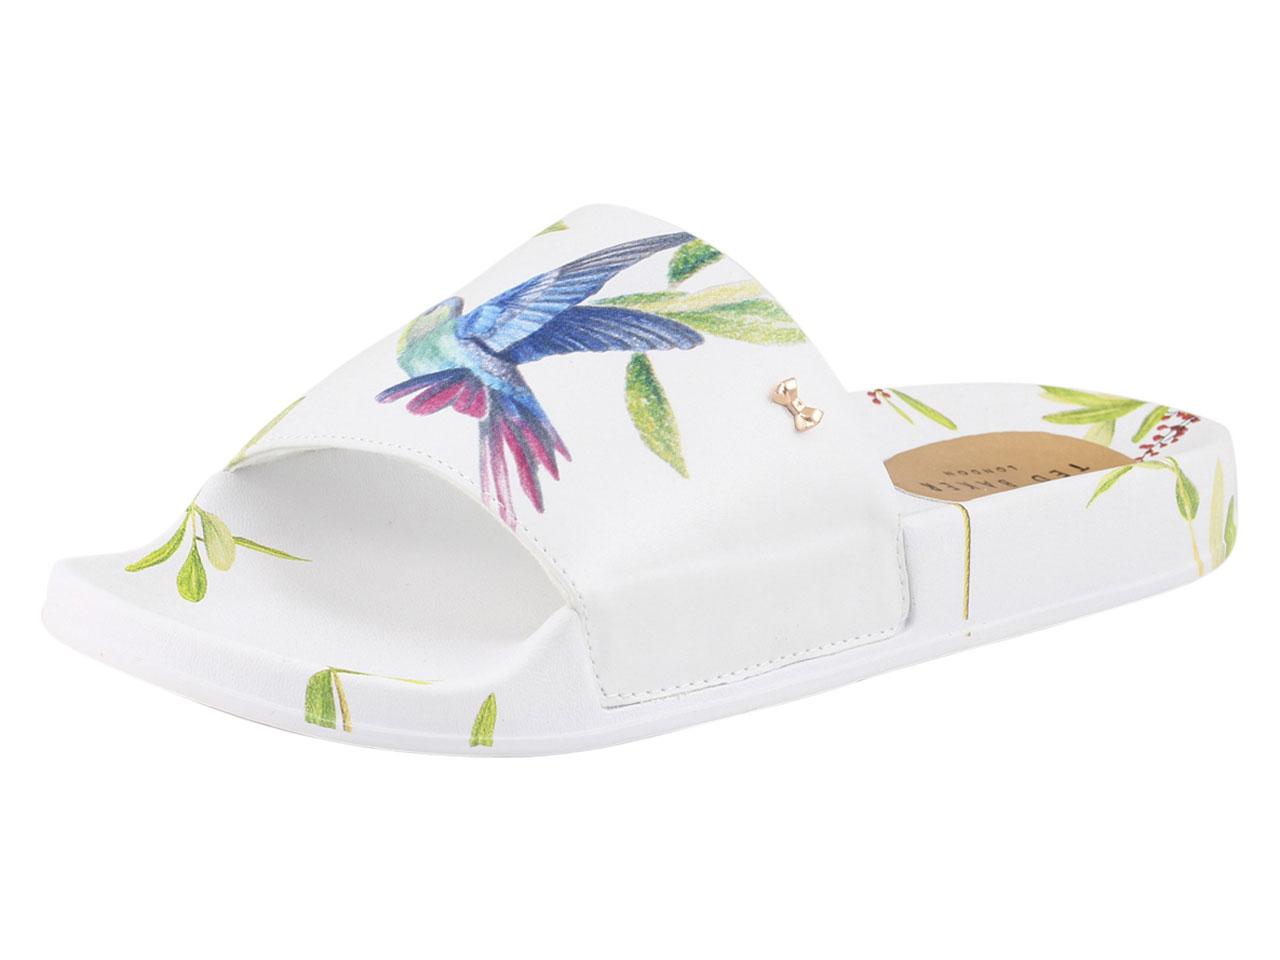 Ted Baker Women's Aveline Slides Sandals Shoes - White - 9 B(M) US